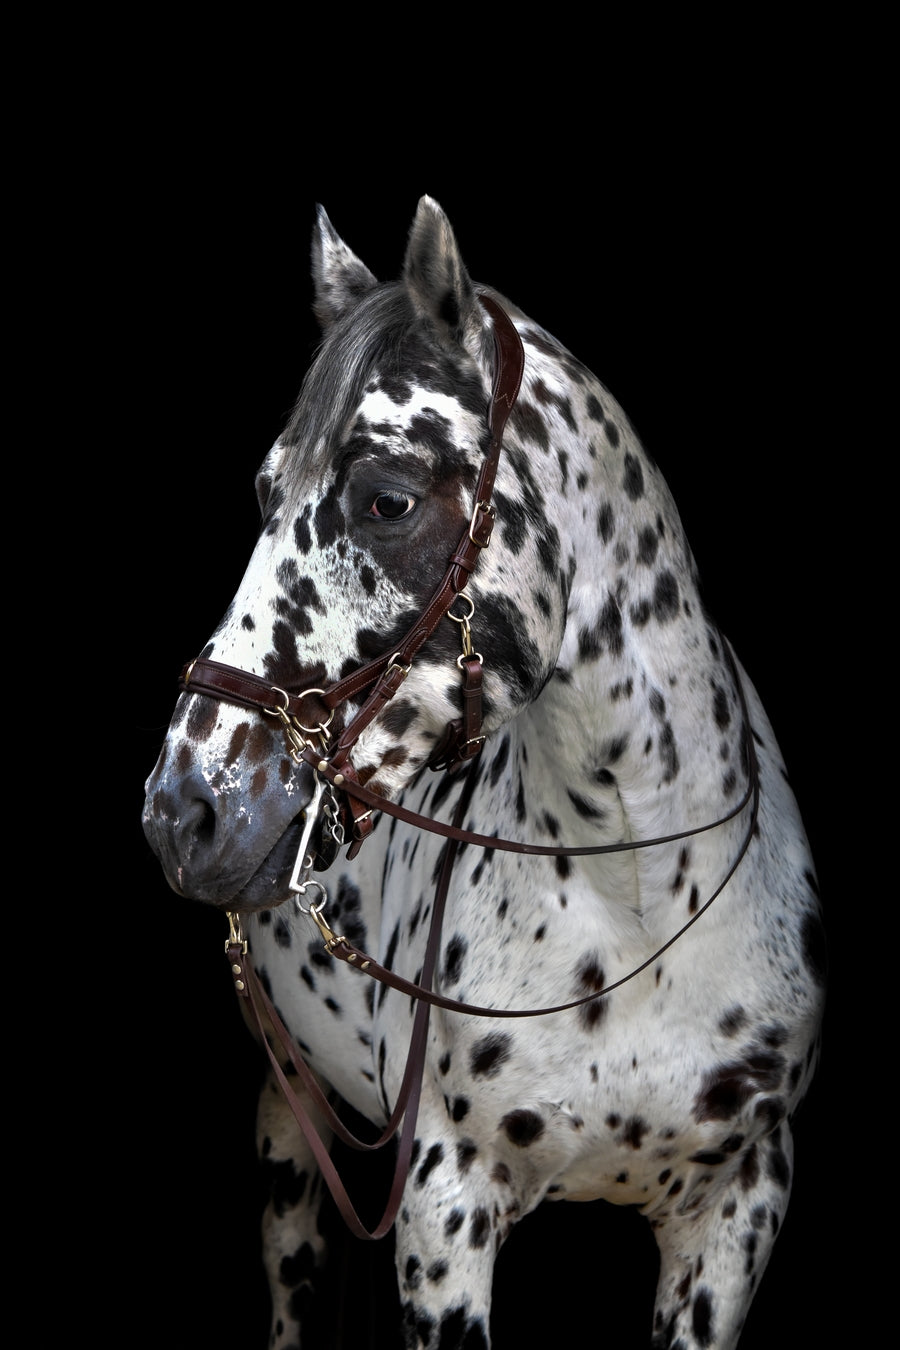 Human & Horse Reins (Teugels) - Human & Horse Academy